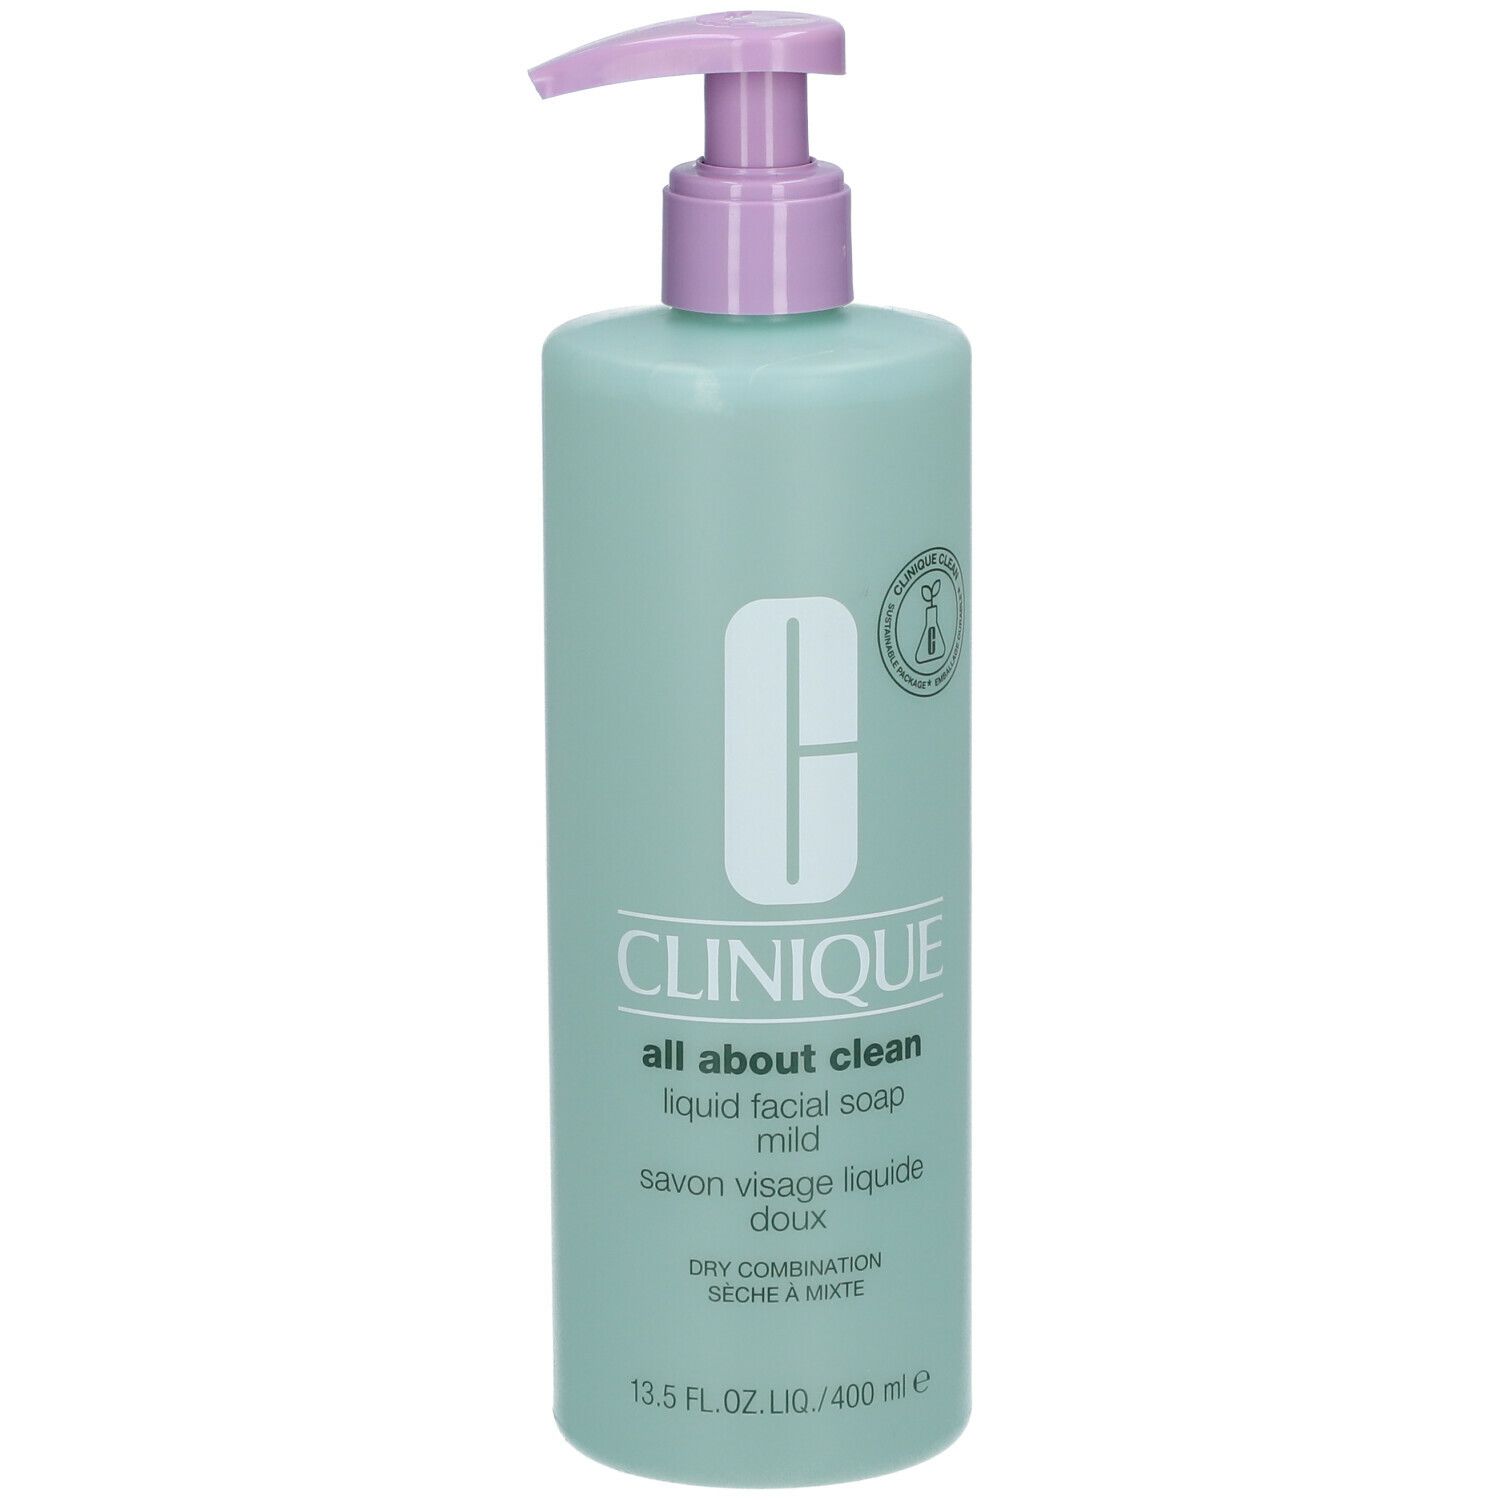 CLINIQUE Liquid Facial Soap Mild 400 ml - SHOP APOTHEKE